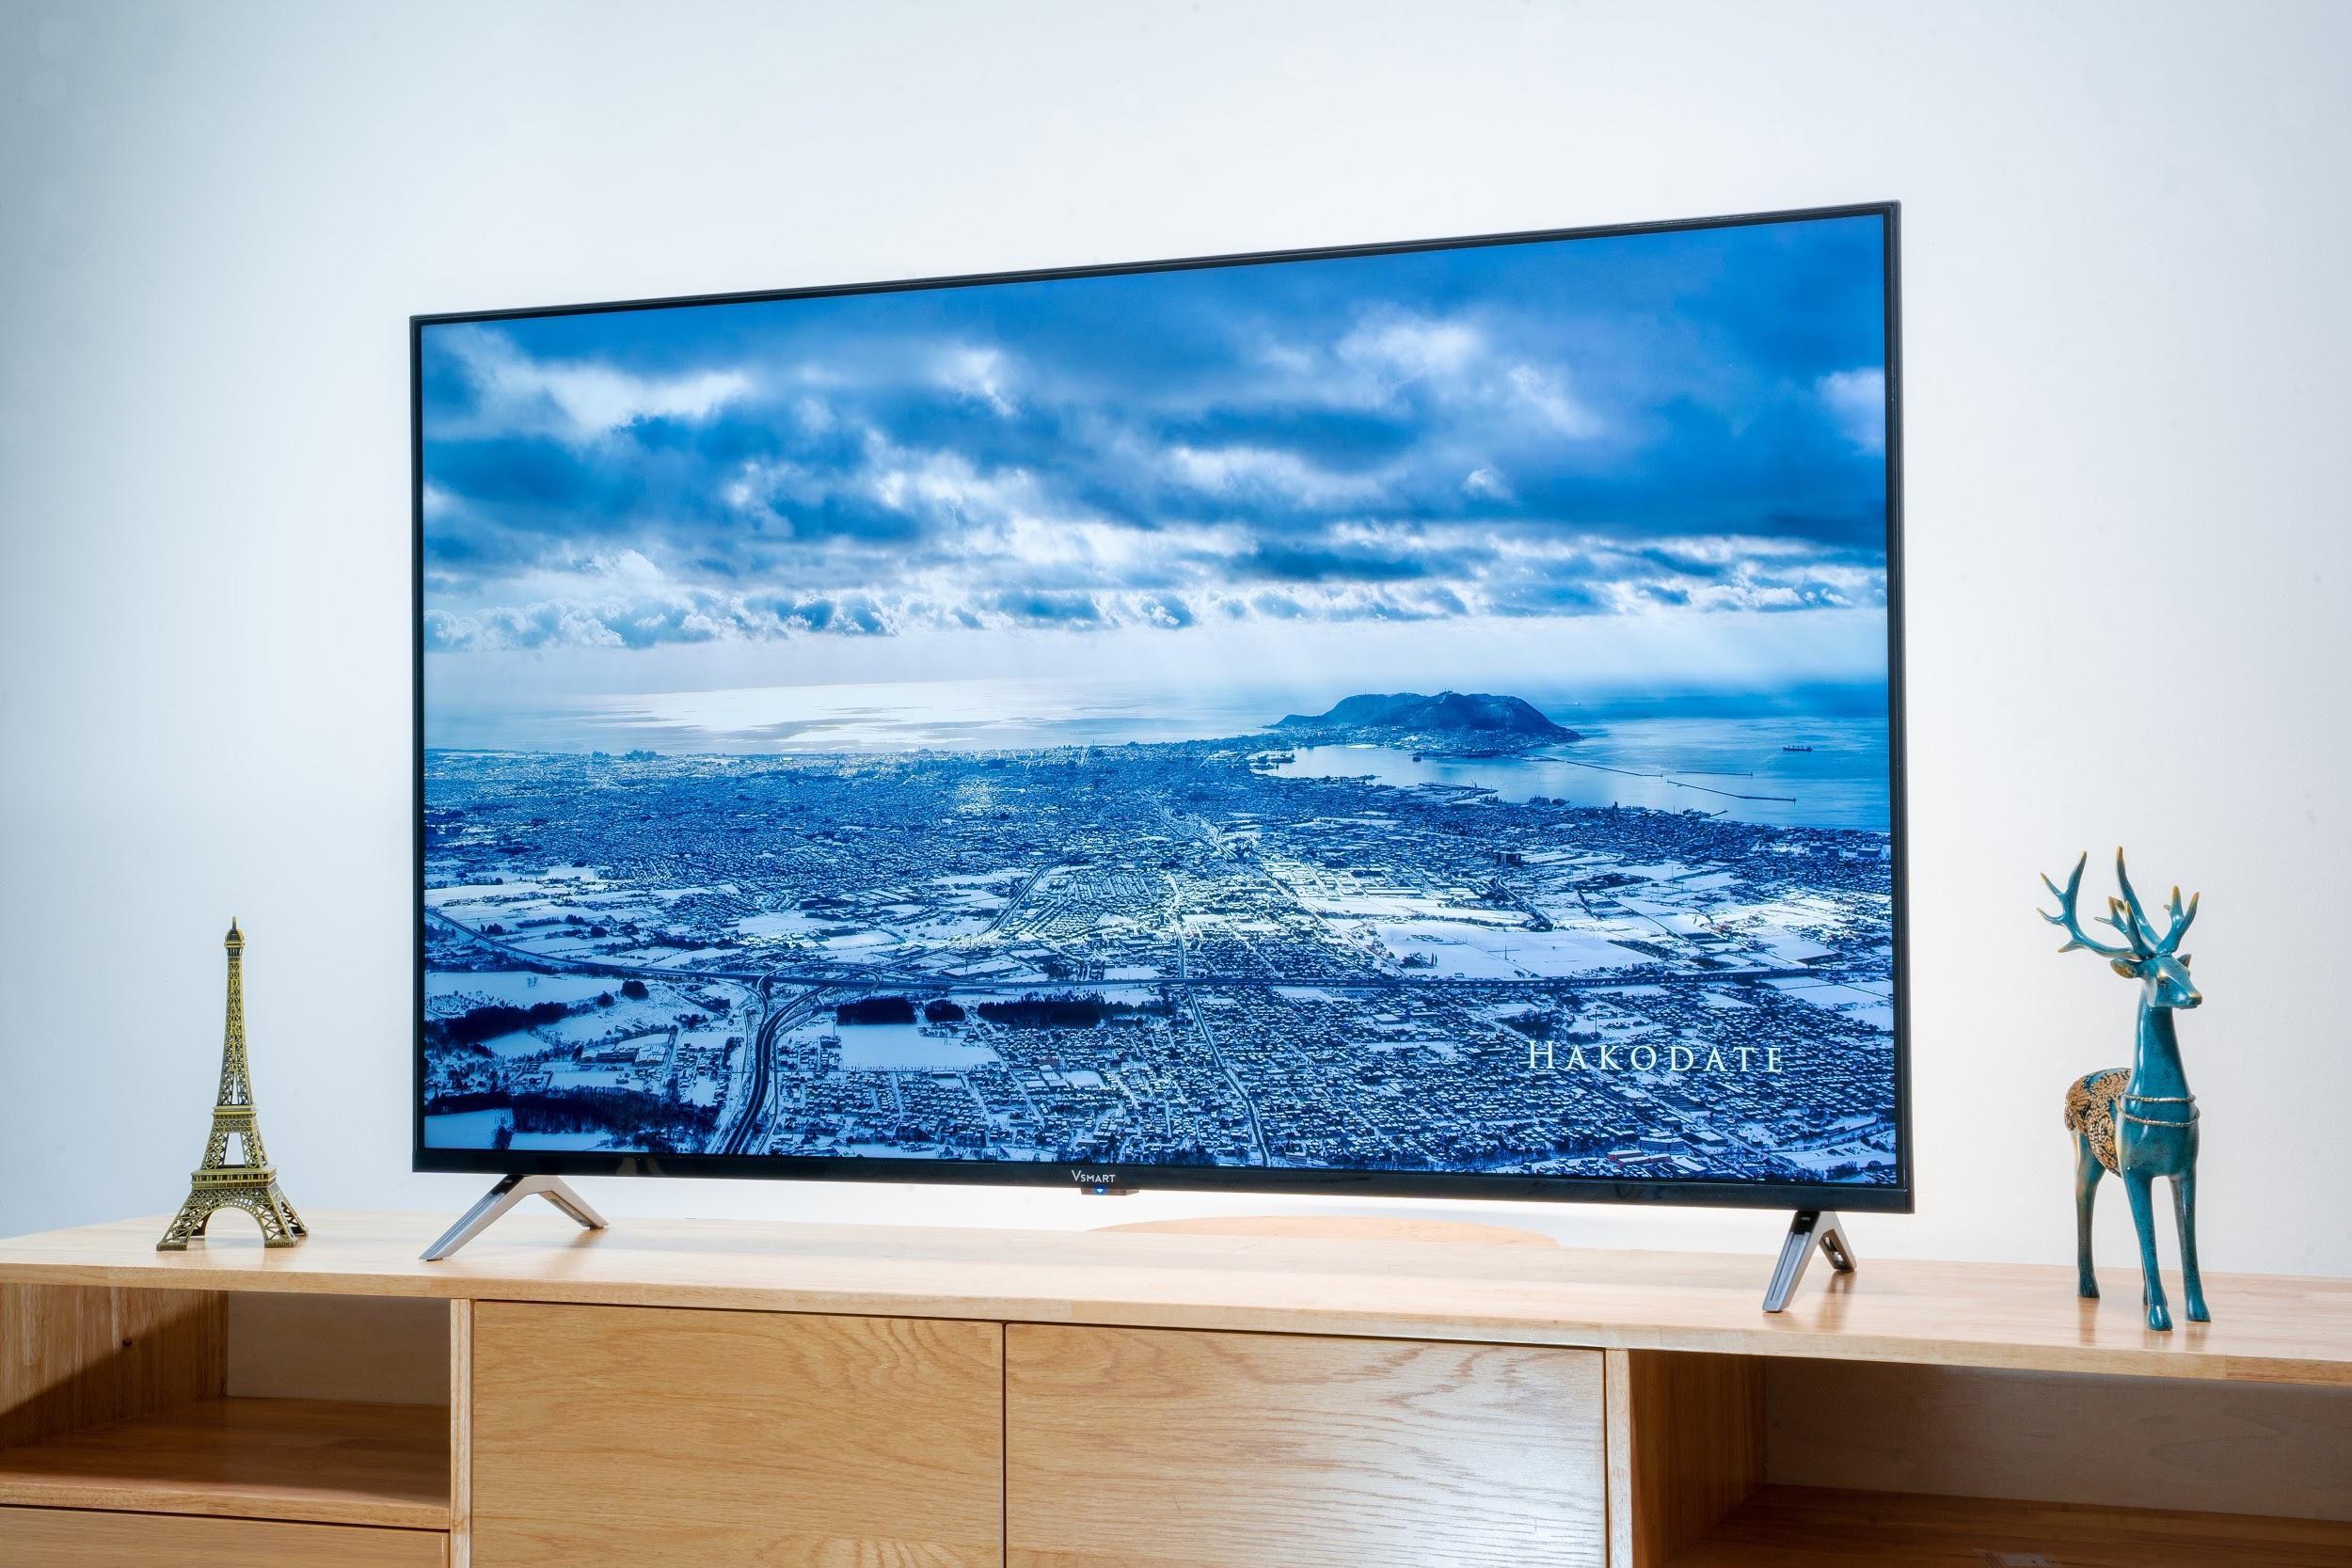 Mở bán rộng rãi, TV Vsmart ưu đãi giá để cạnh tranh LG, Samsung